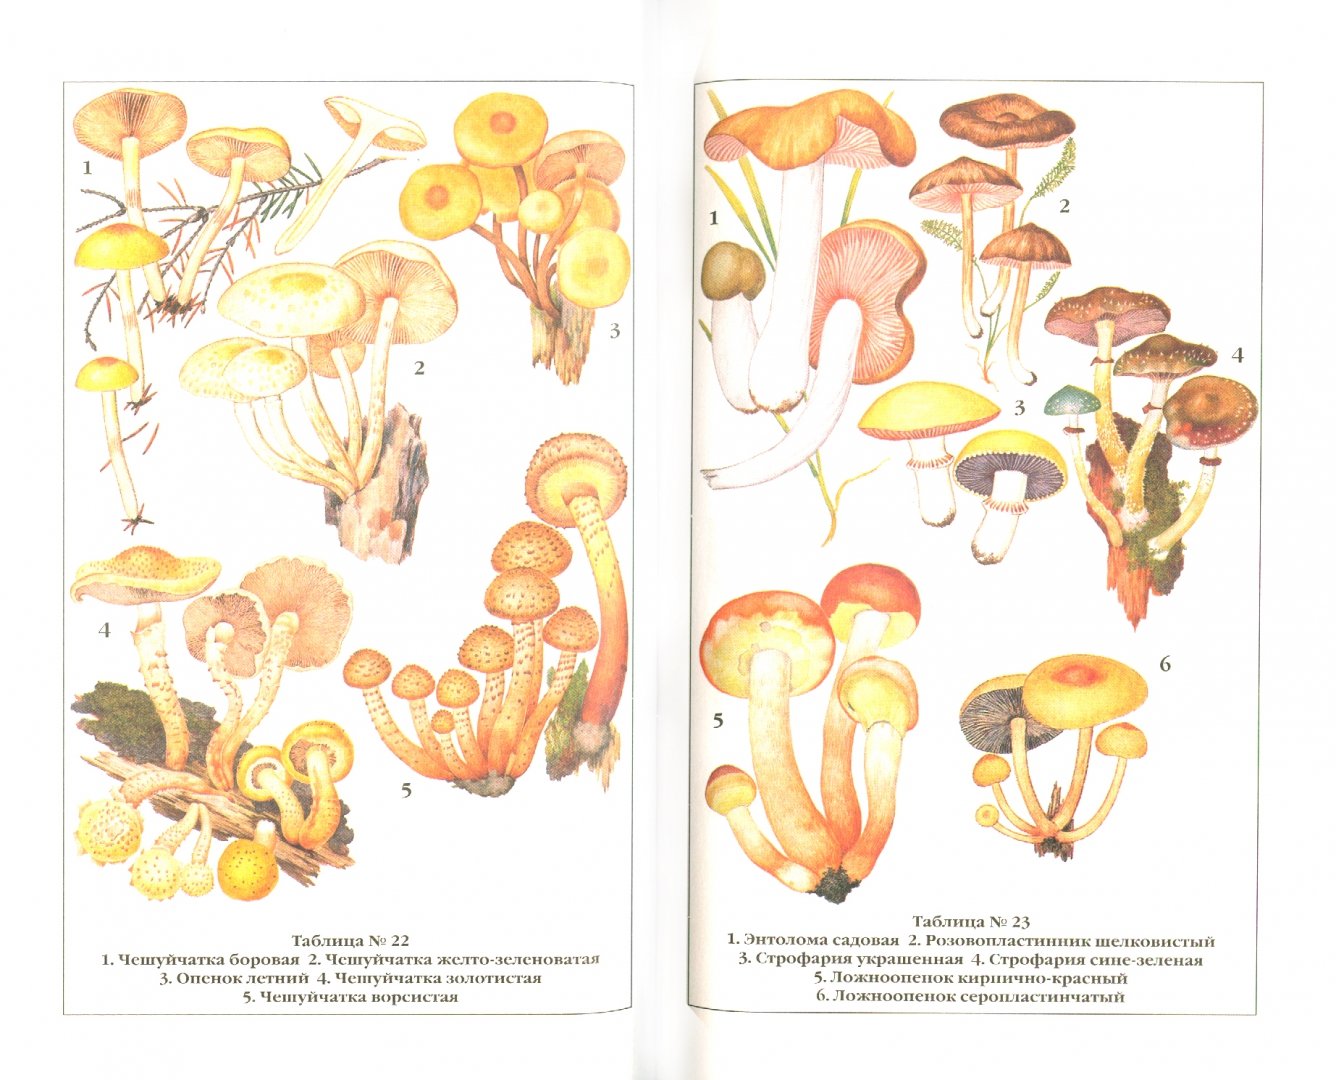 Иллюстрация 1 из 3 для Справочник грибника - Клепинина, Клепинина | Лабиринт - книги. Источник: Лабиринт